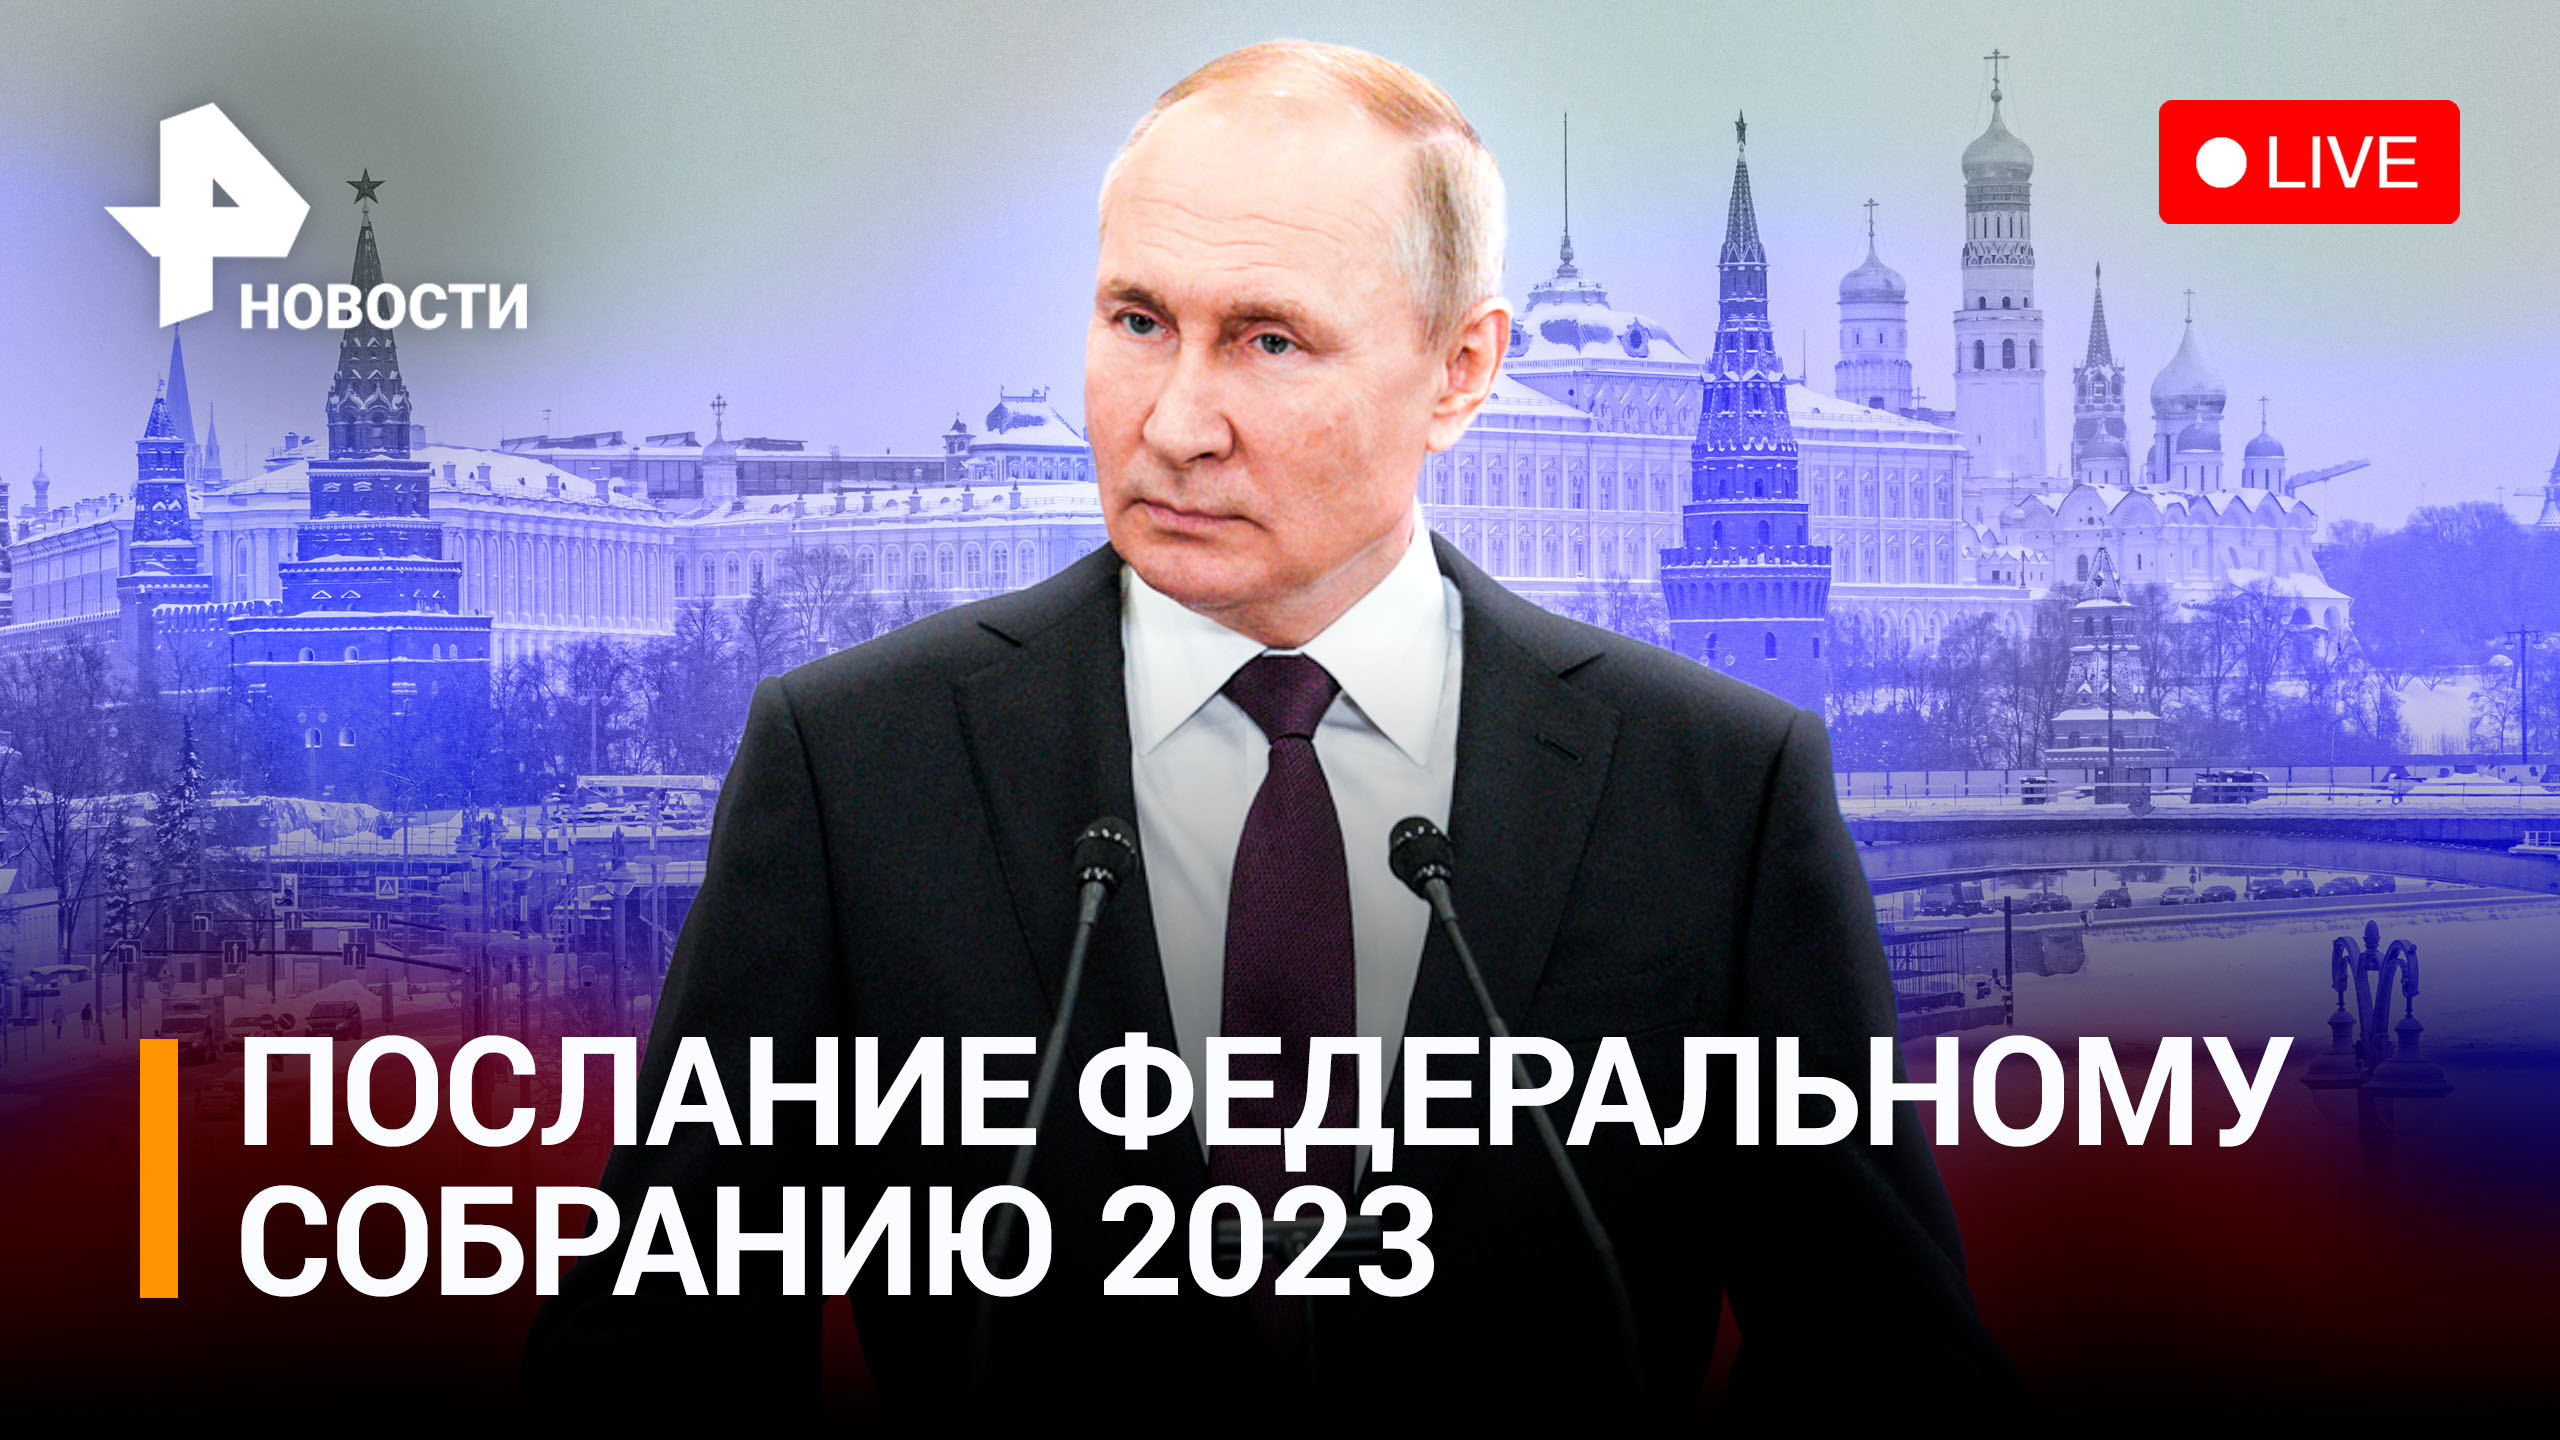 Послание Владимира Путина Федеральному собранию - 2023. Прямая трансляция